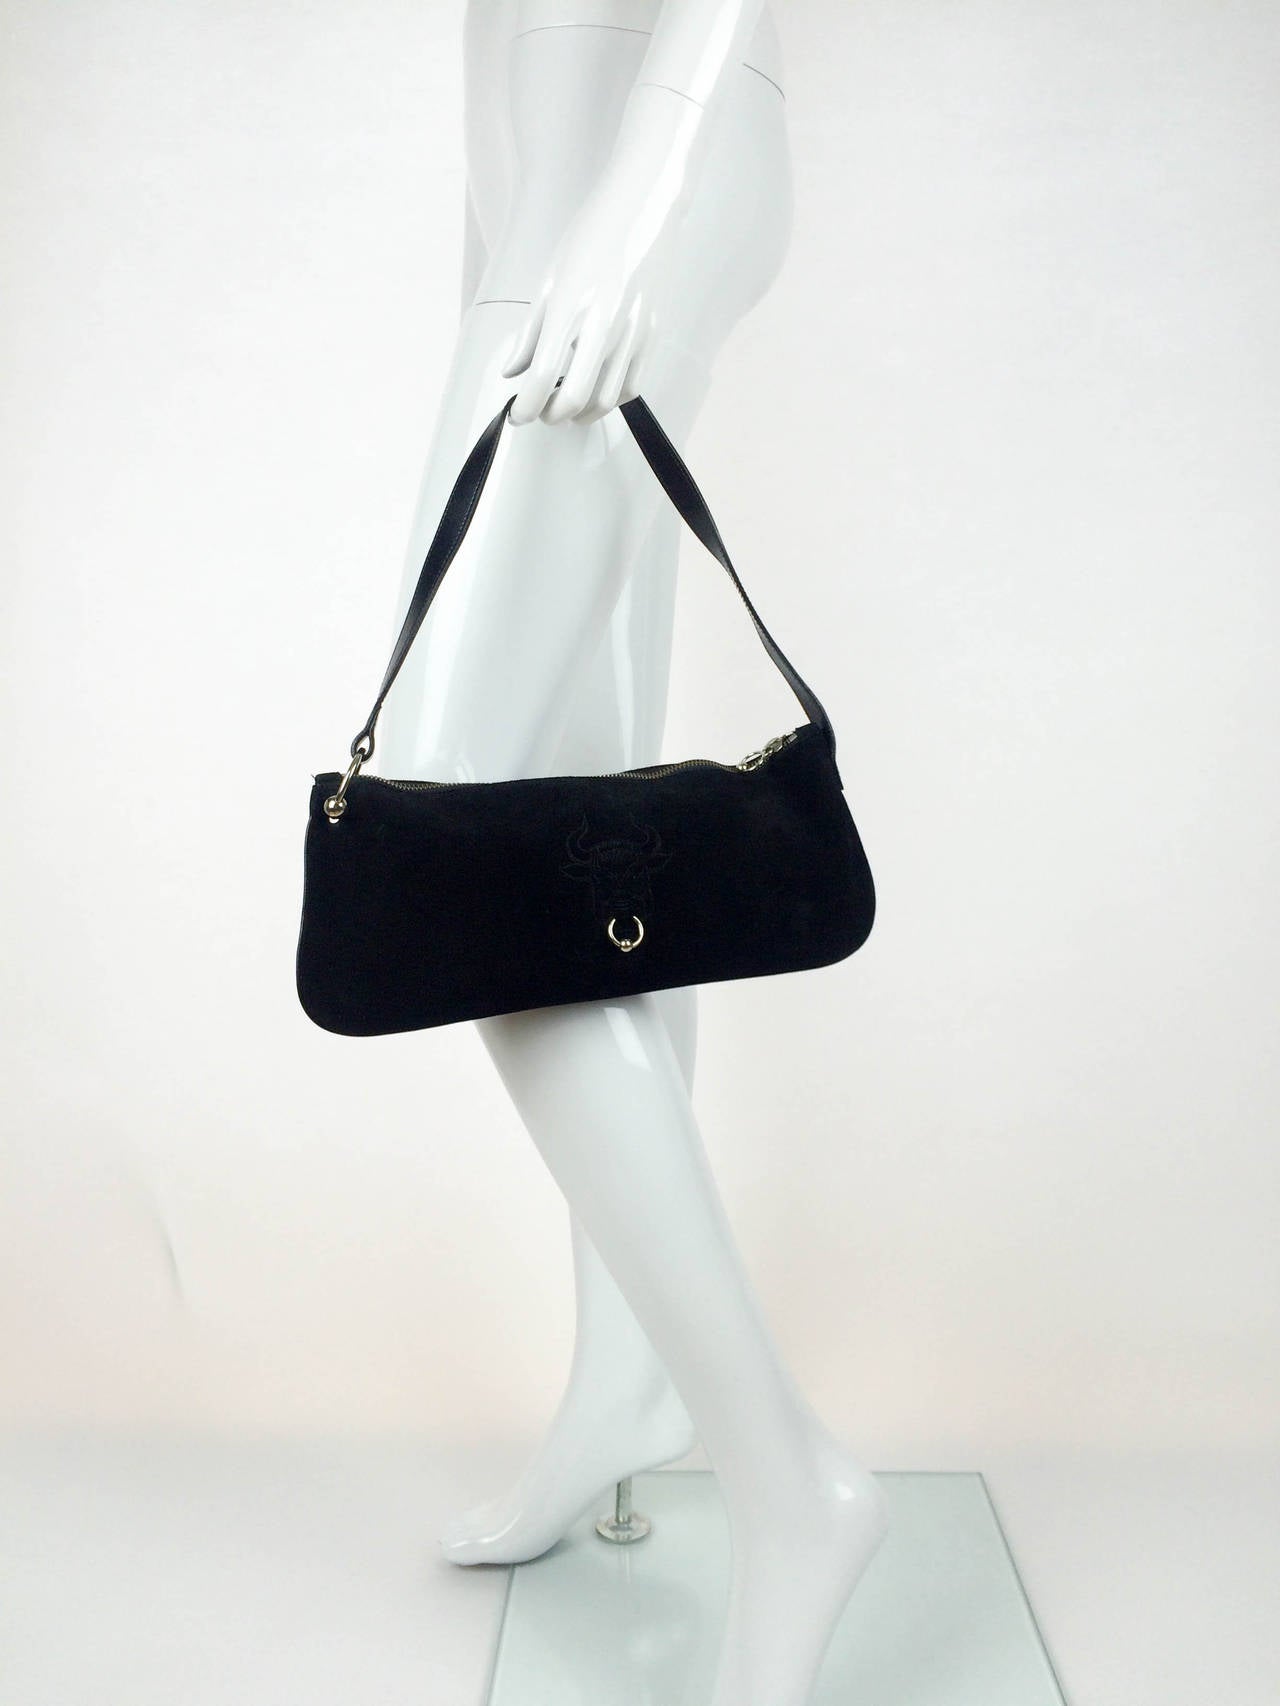 Black Jean Paul Gaultier Bullring Handbag